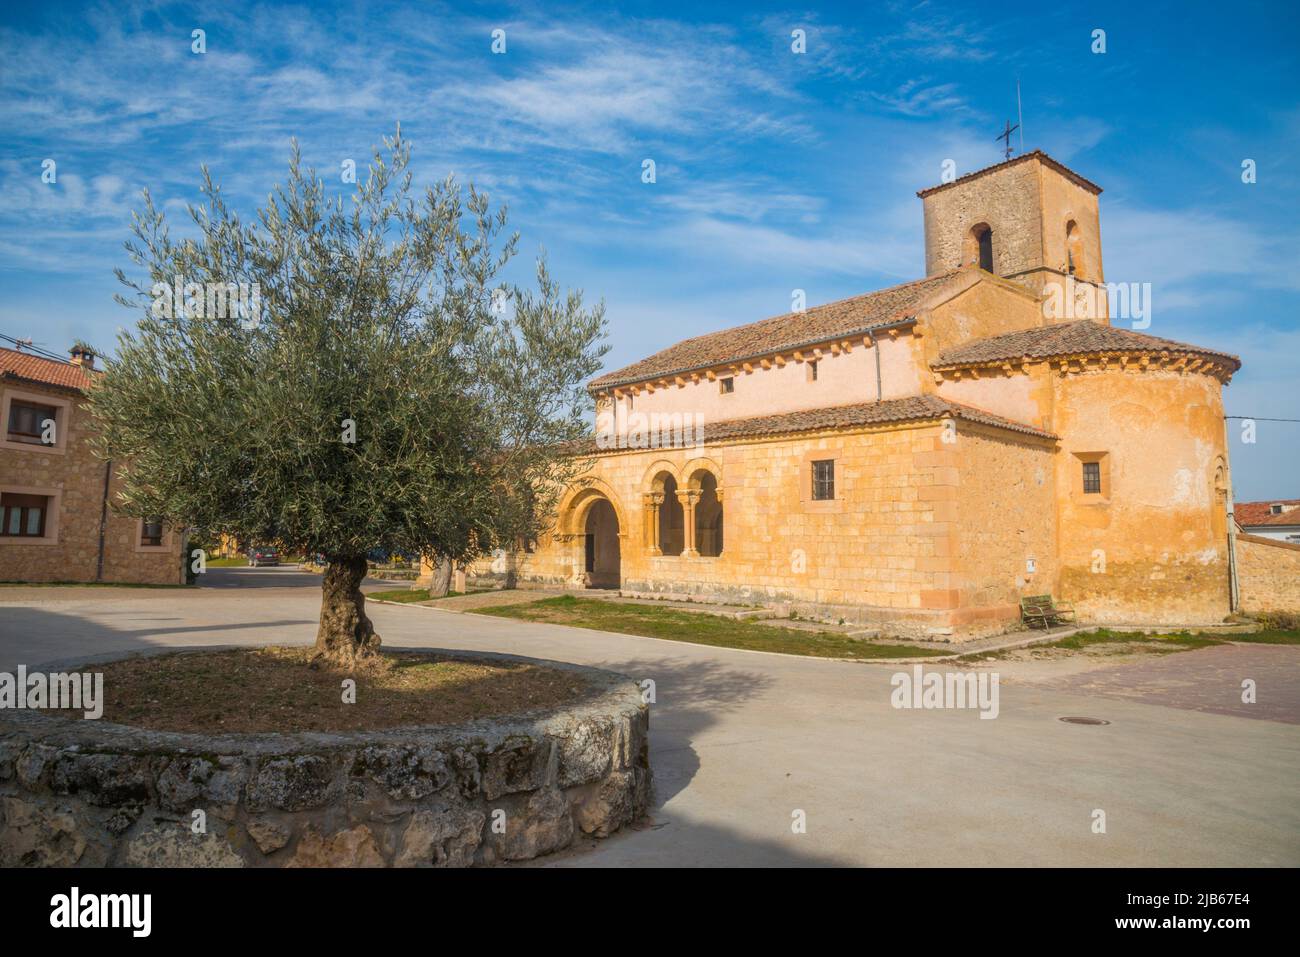 Facade of San Pedro Advincula church. Perorrubio, Segovia province, Castilla Leon, Spain. Stock Photo